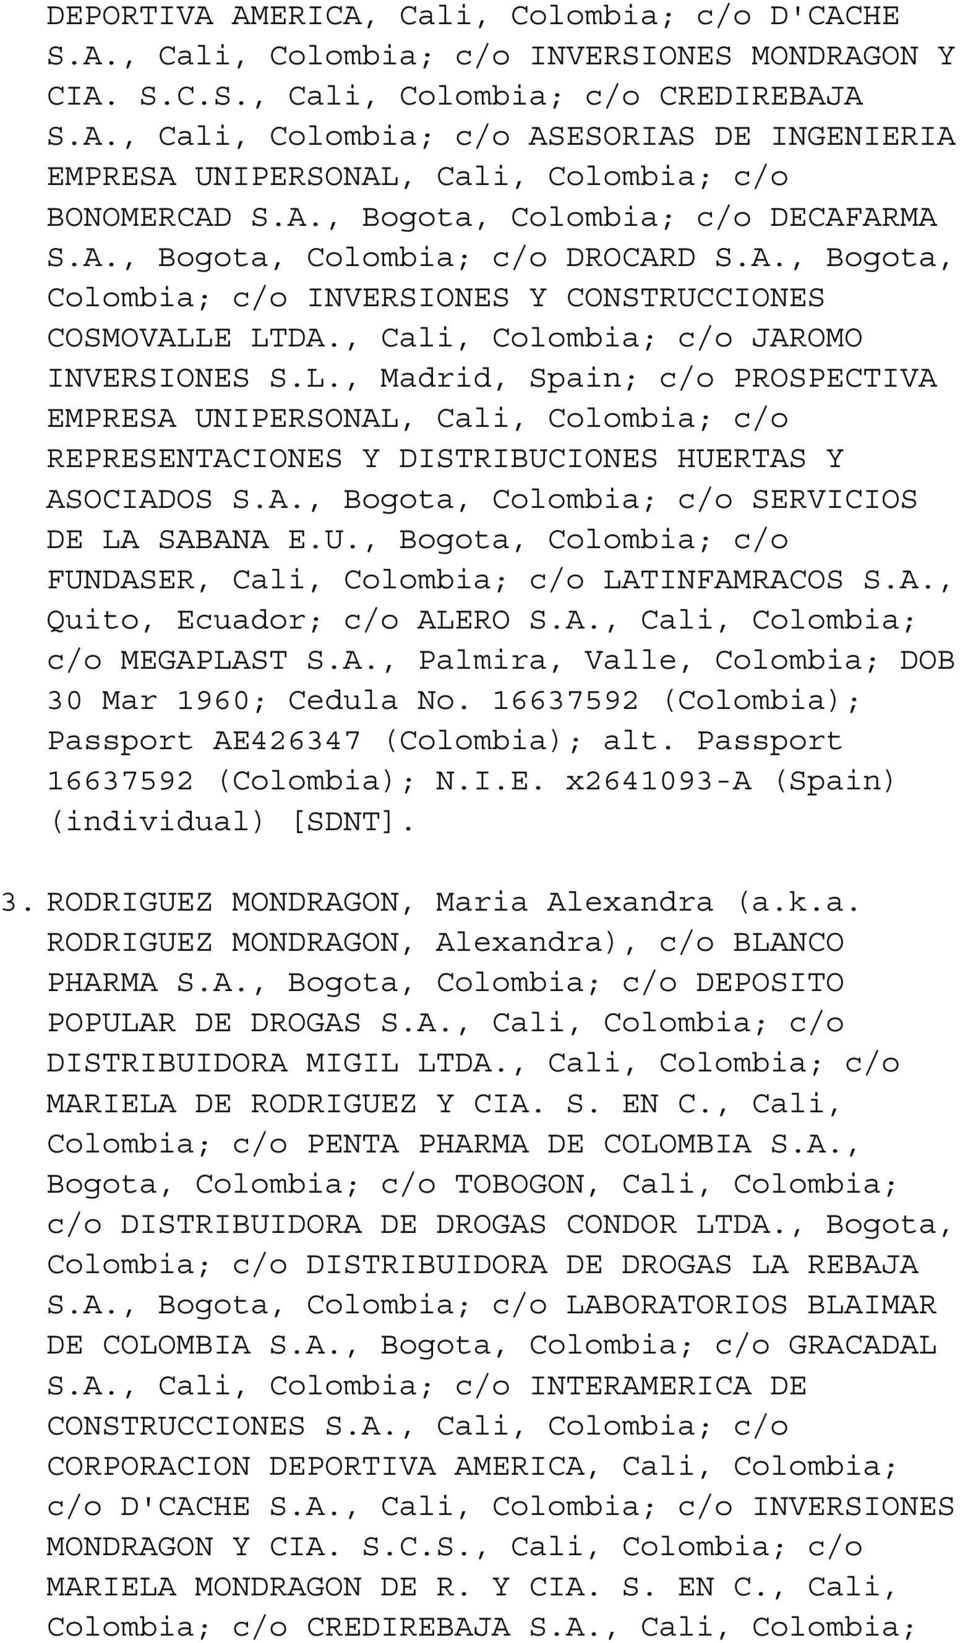 E LTDA., Cali, Colombia; c/o JAROMO INVERSIONES S.L., Madrid, Spain; c/o PROSPECTIVA EMPRESA UNIPERSONAL, Cali, Colombia; c/o REPRESENTACIONES Y DISTRIBUCIONES HUERTAS Y ASOCIADOS S.A., Bogota, Colombia; c/o SERVICIOS DE LA SABANA E.